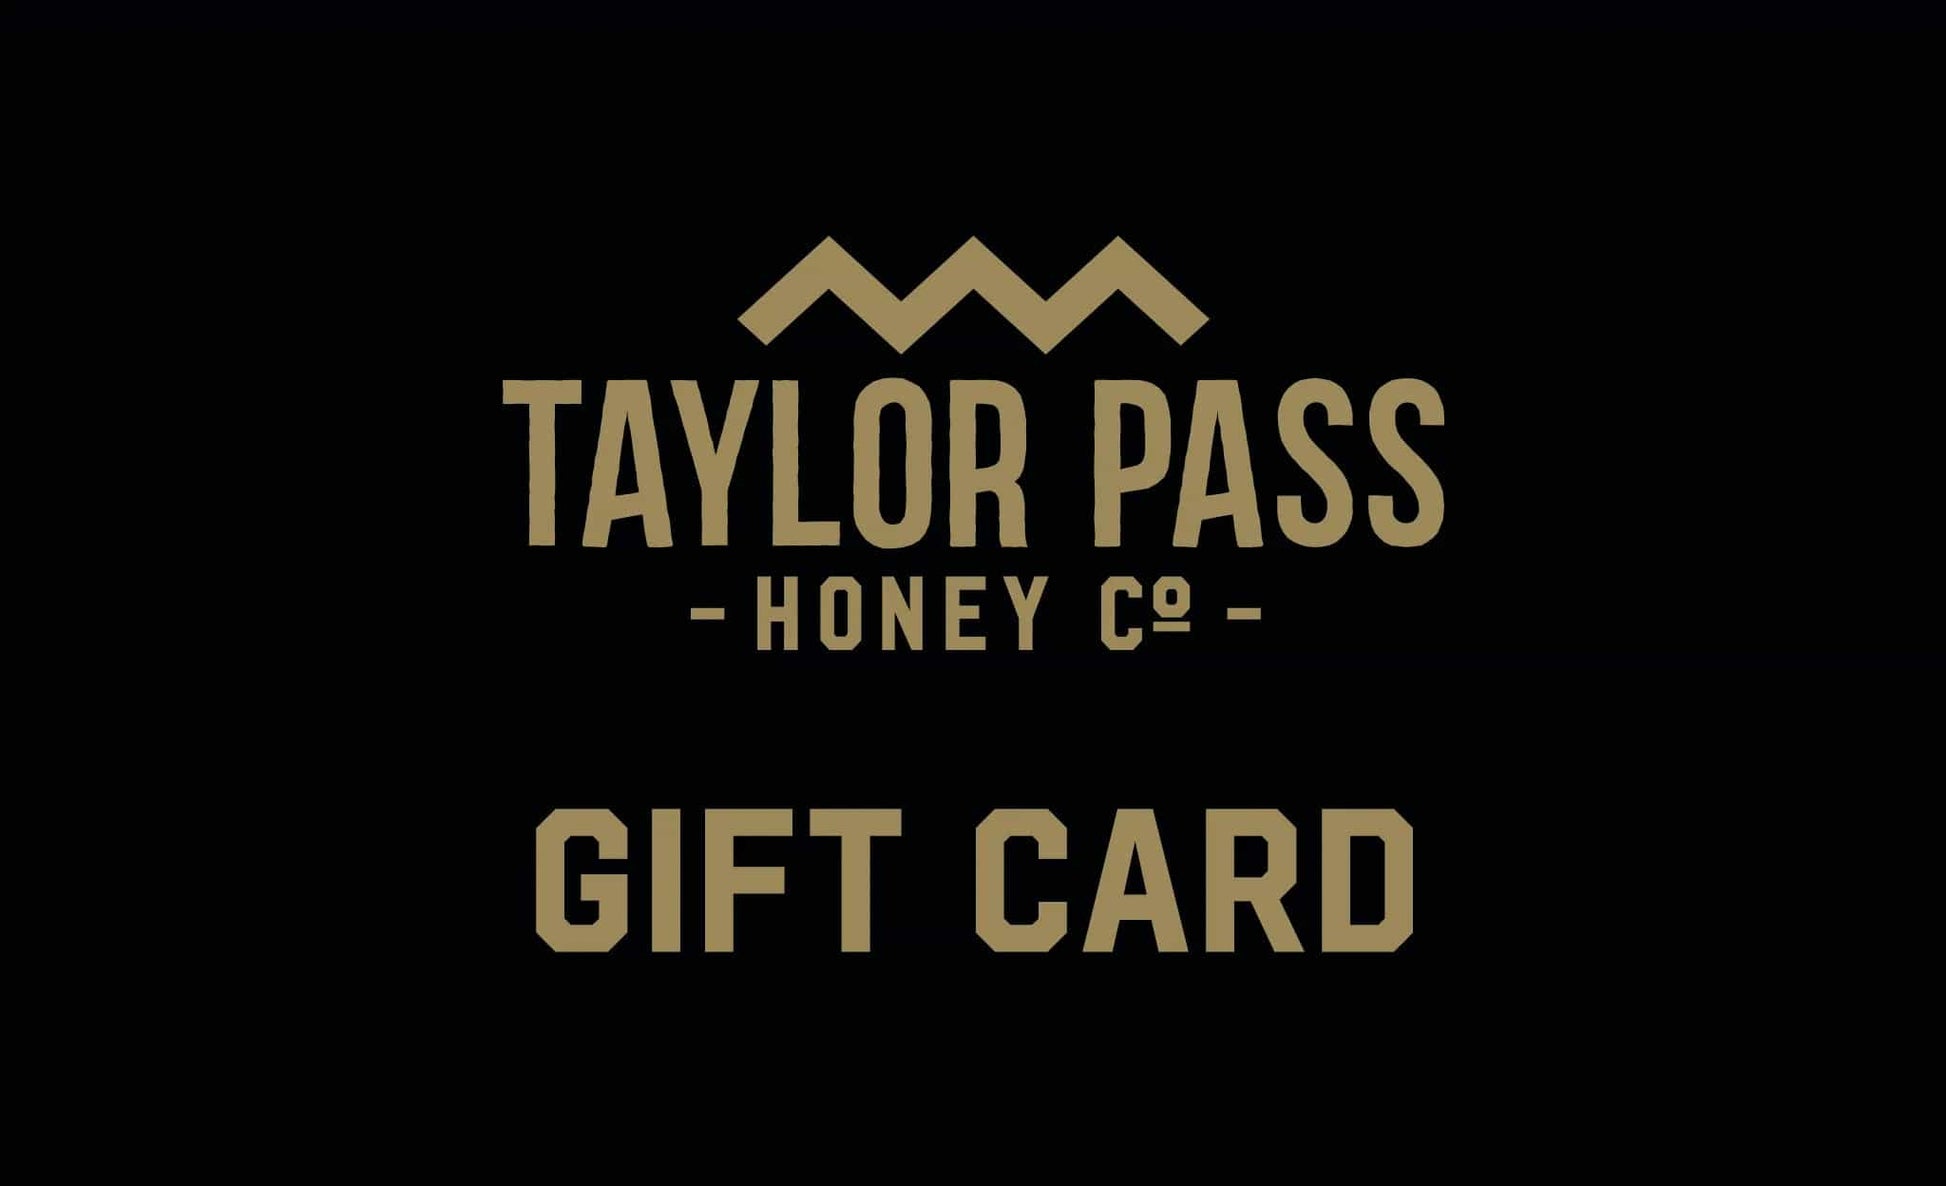 Taylor Pass Honey Co  Taylor Pass Honey Co Gift Card